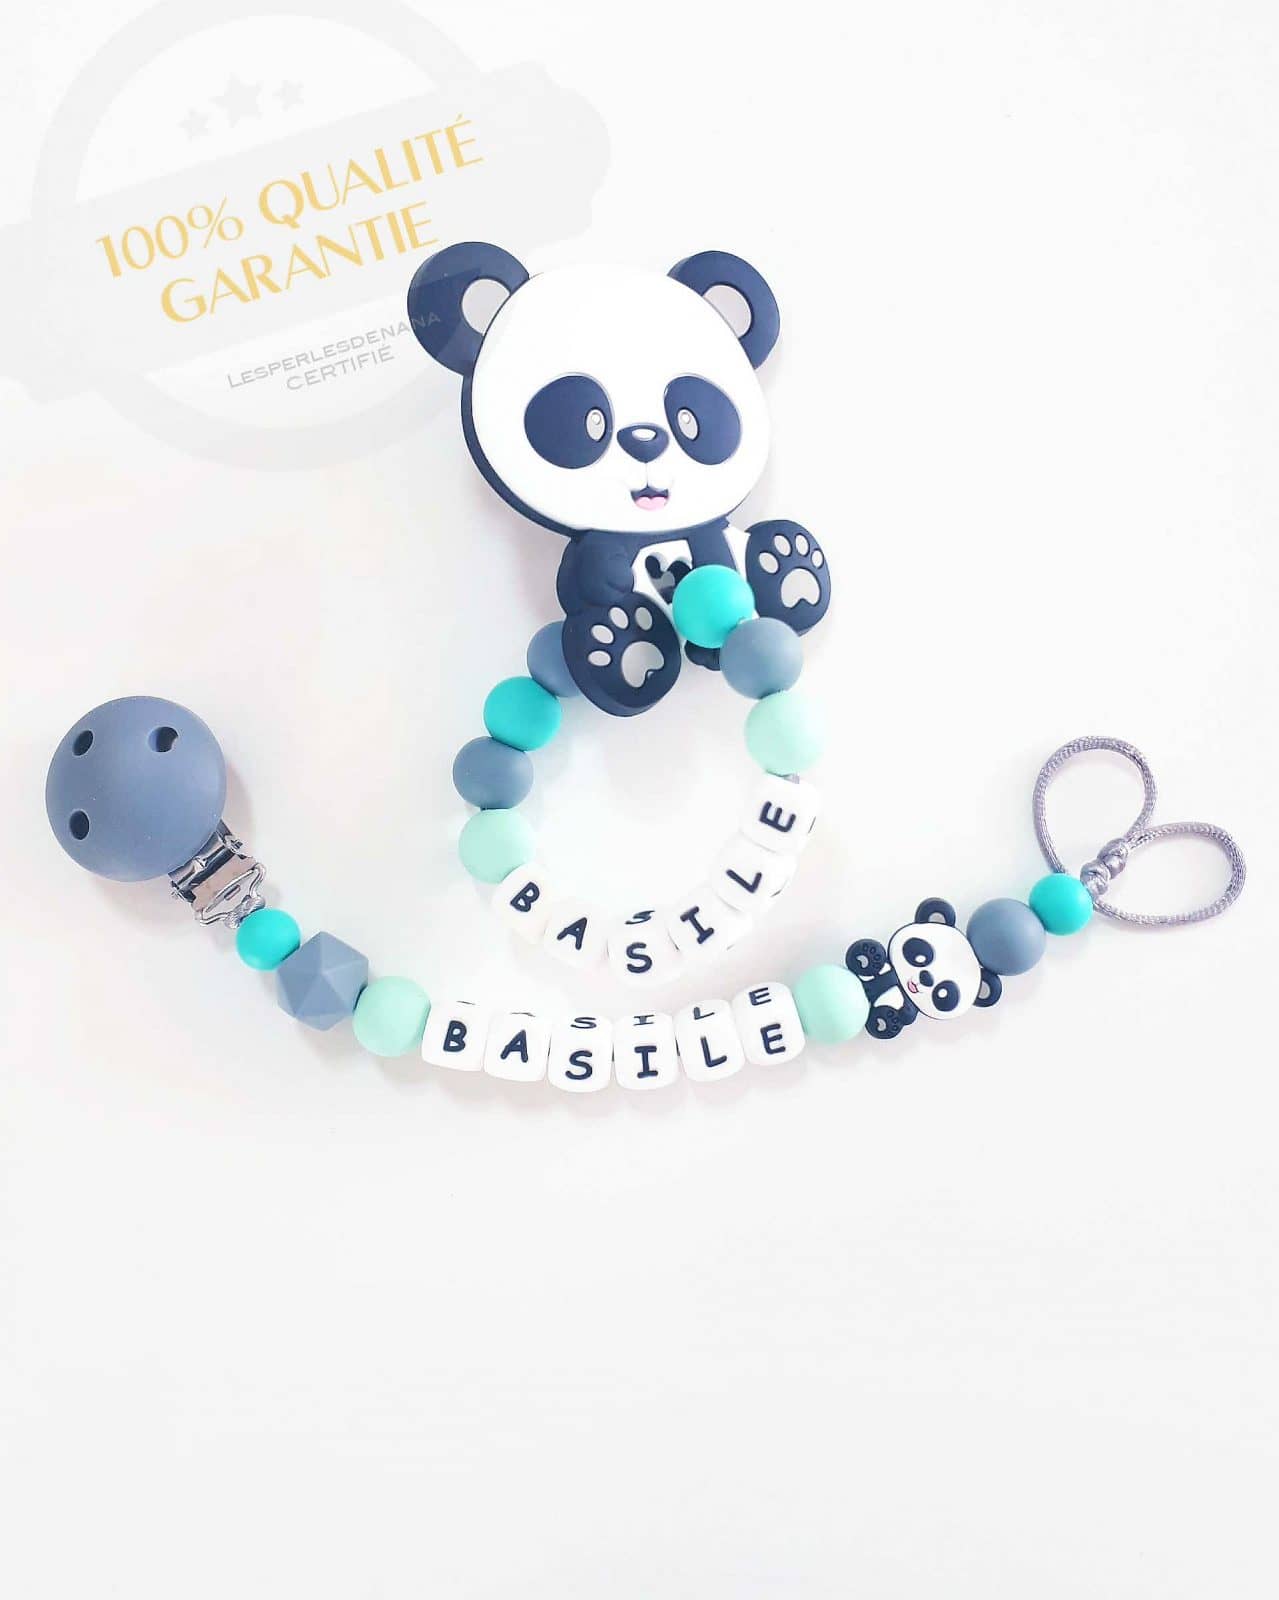 Attache tétine Garçon anneau personnalisée Panda - Cadeaux Naissance Noel  jouets en bois